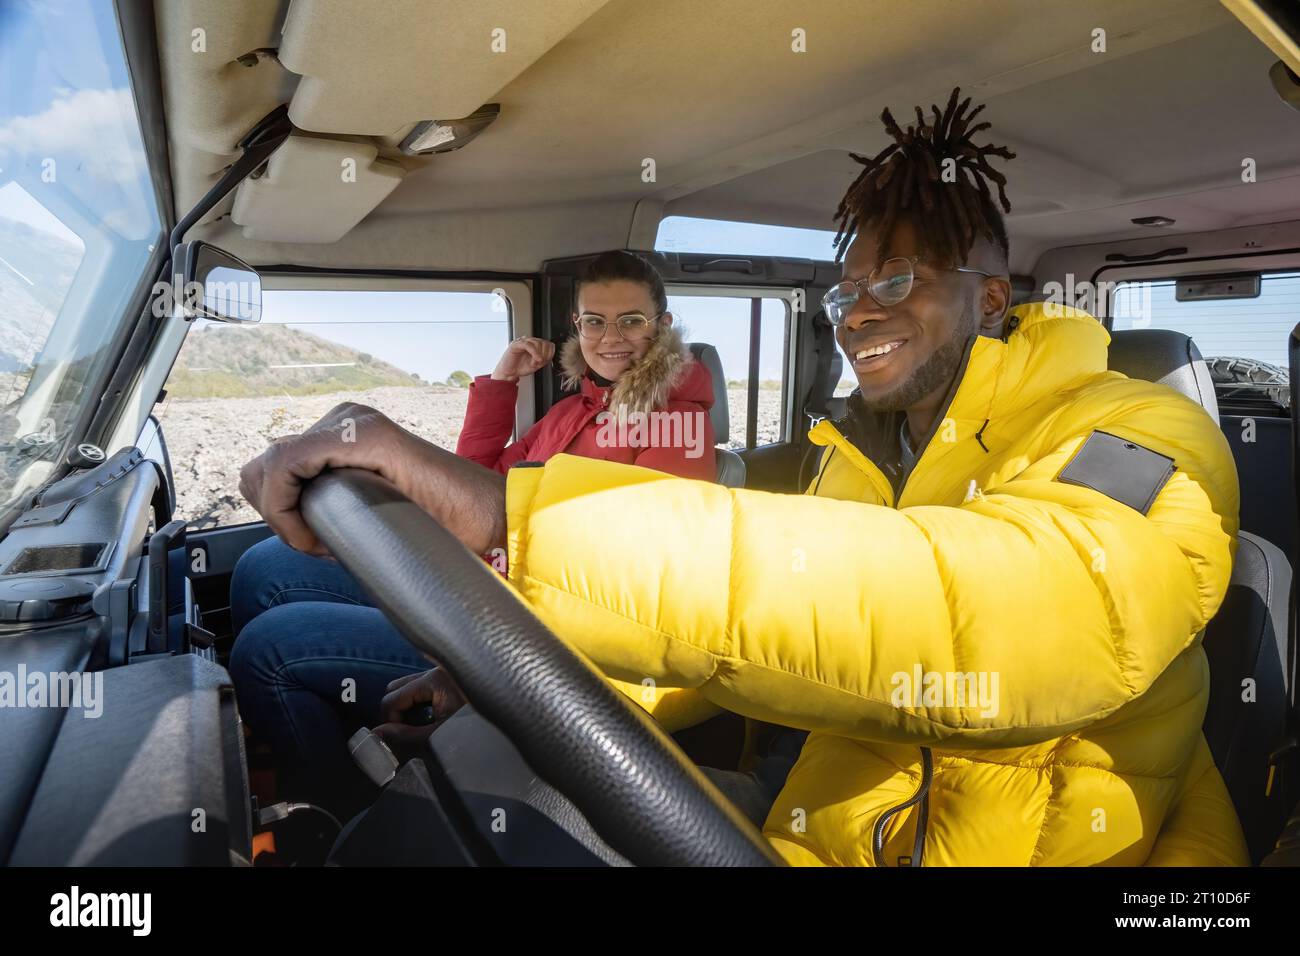 Un hombre africano con chaqueta de excursionista conduce un vehículo todoterreno, con su compañera caucásica mirándolo con una cálida sonrisa. Foto de stock